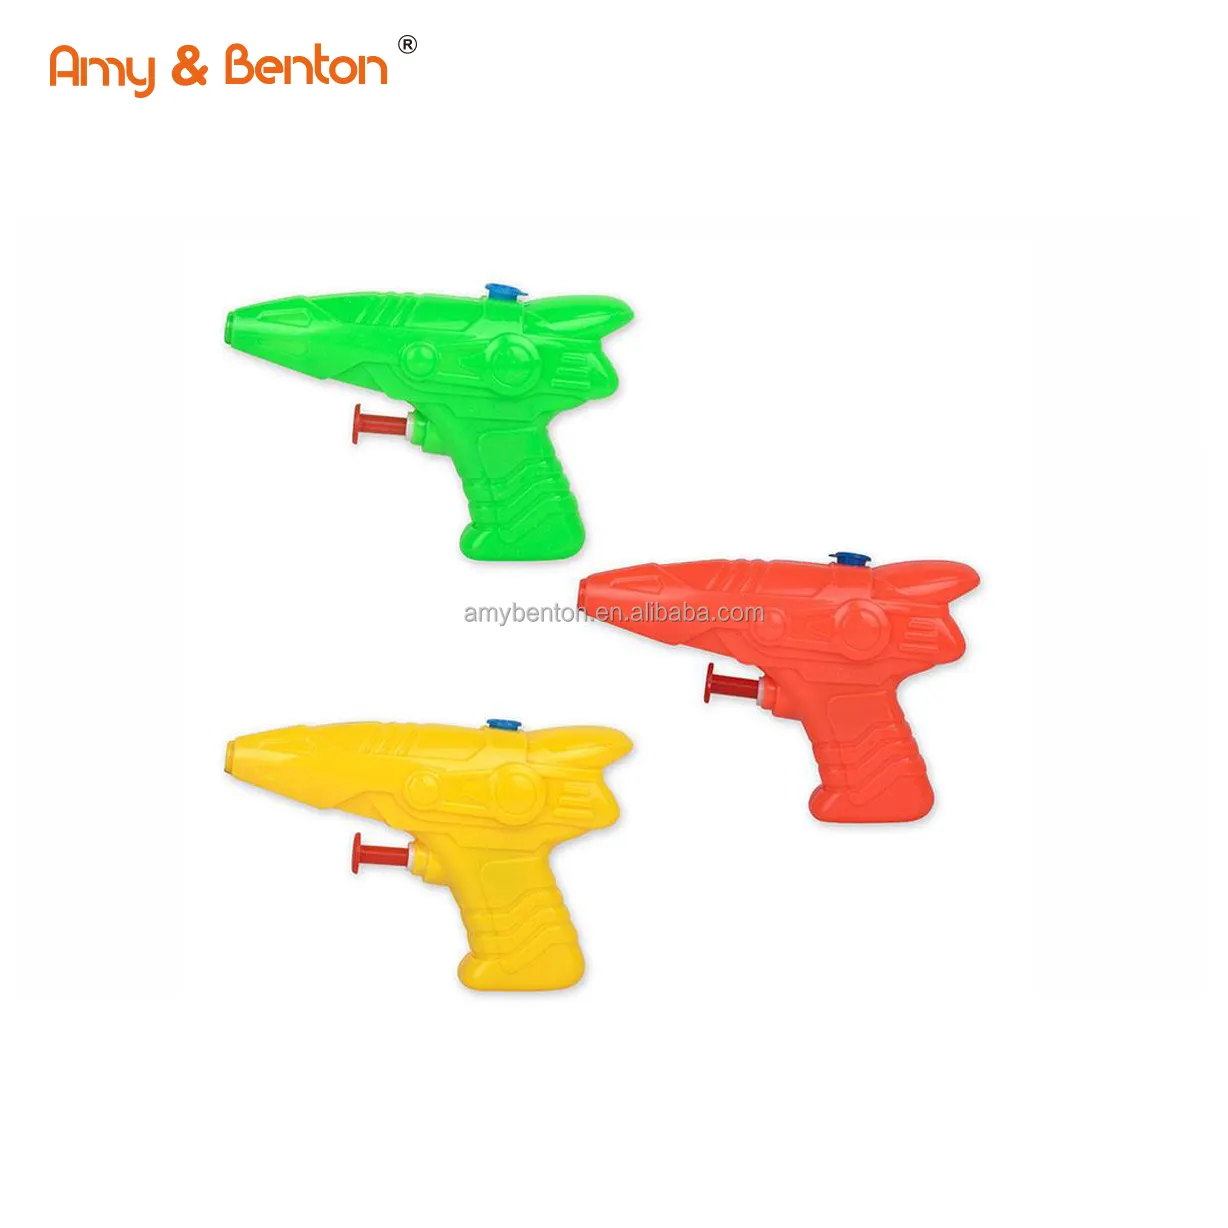 Nuovo articolo prodotto per bambini colorato pistola ad acqua giocattolo gioco estivo pistola ad acqua all'aperto giocattoli per bambini